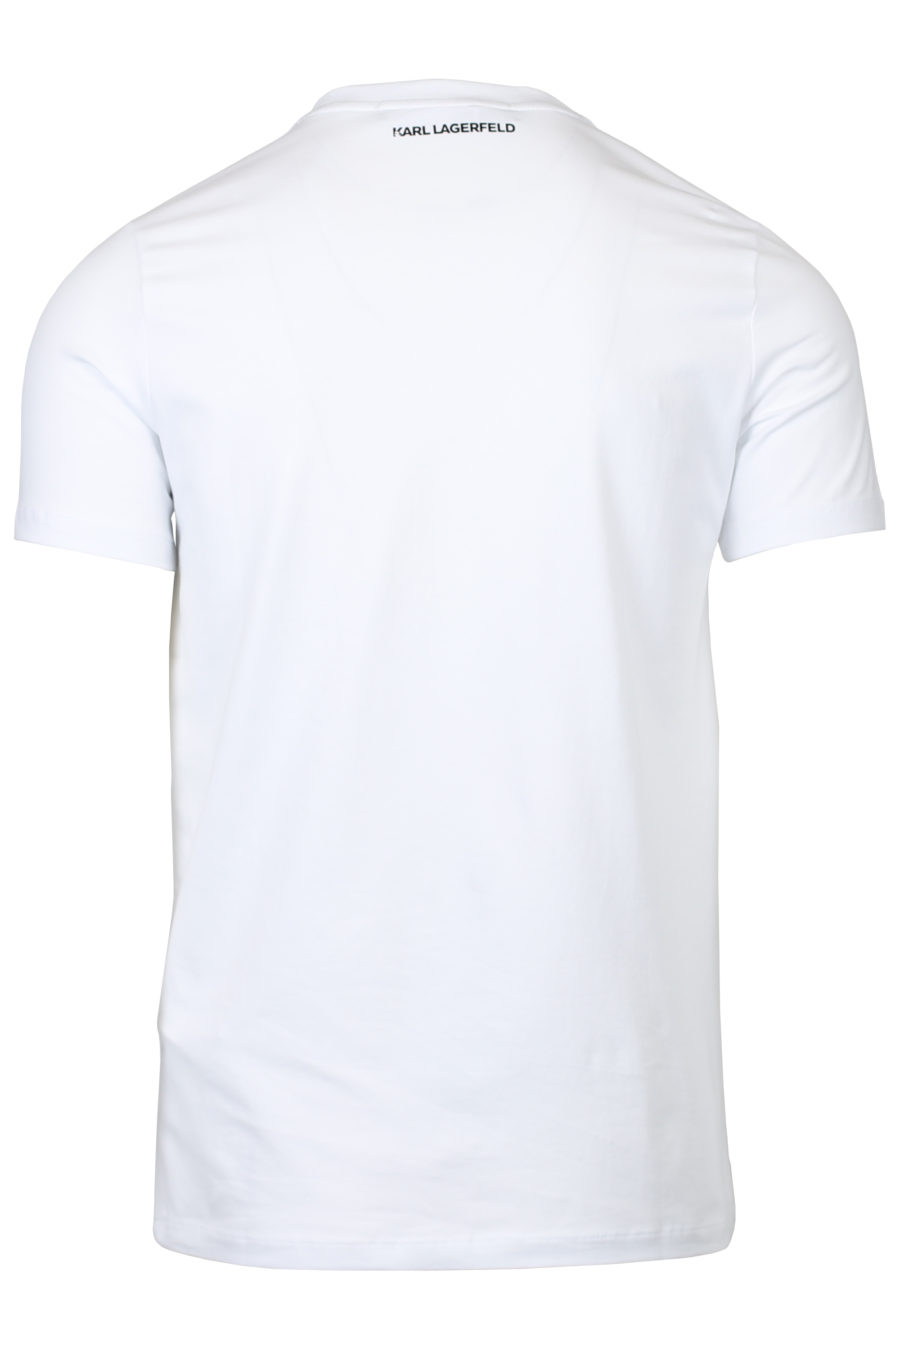 T-Shirt mit weißem Logo in schwarzer Farbe - IMG 2040